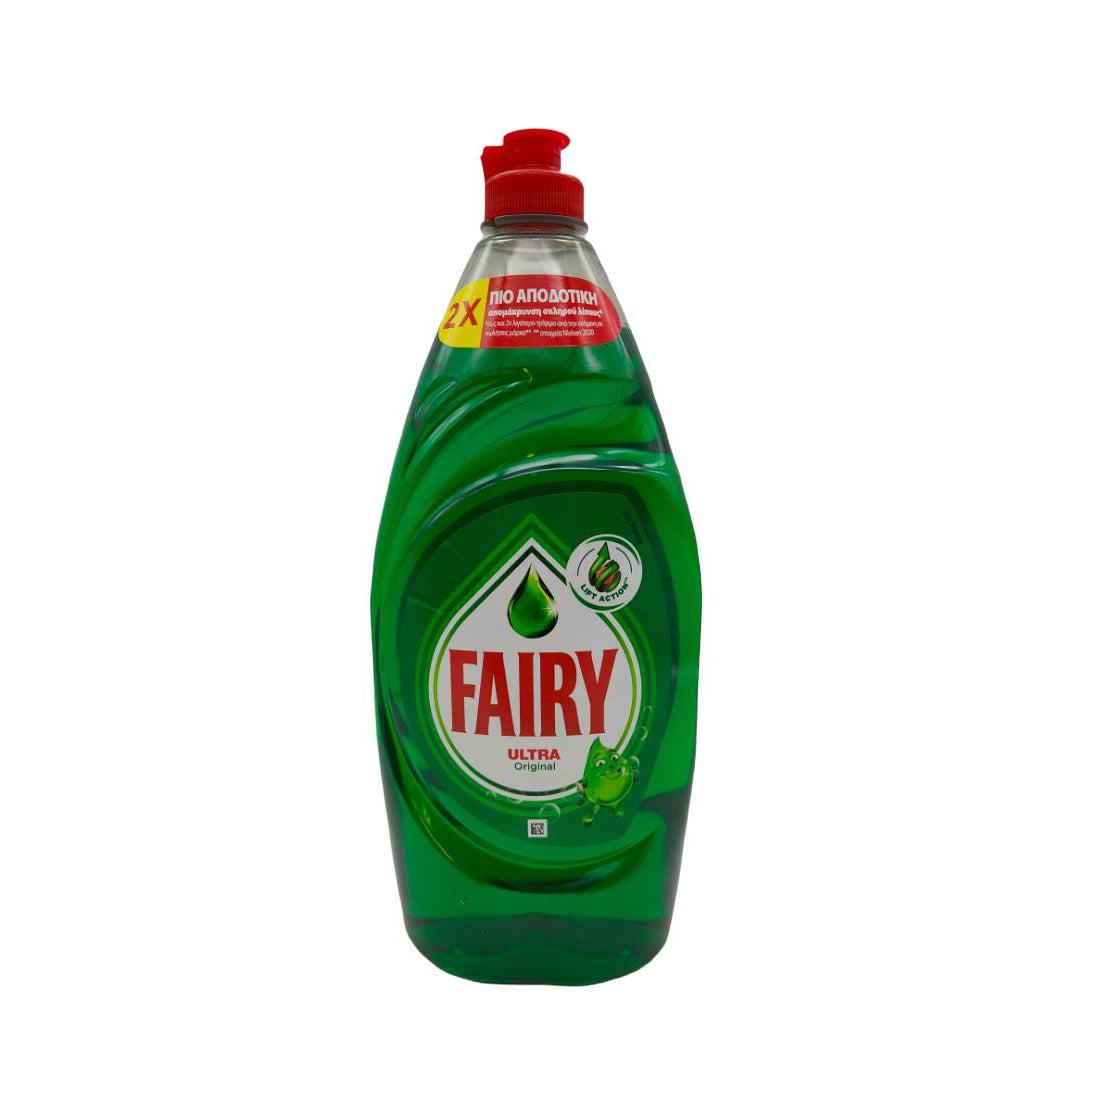 Fairy - Lave-vaisselle liquide Ultra Original - 900ml